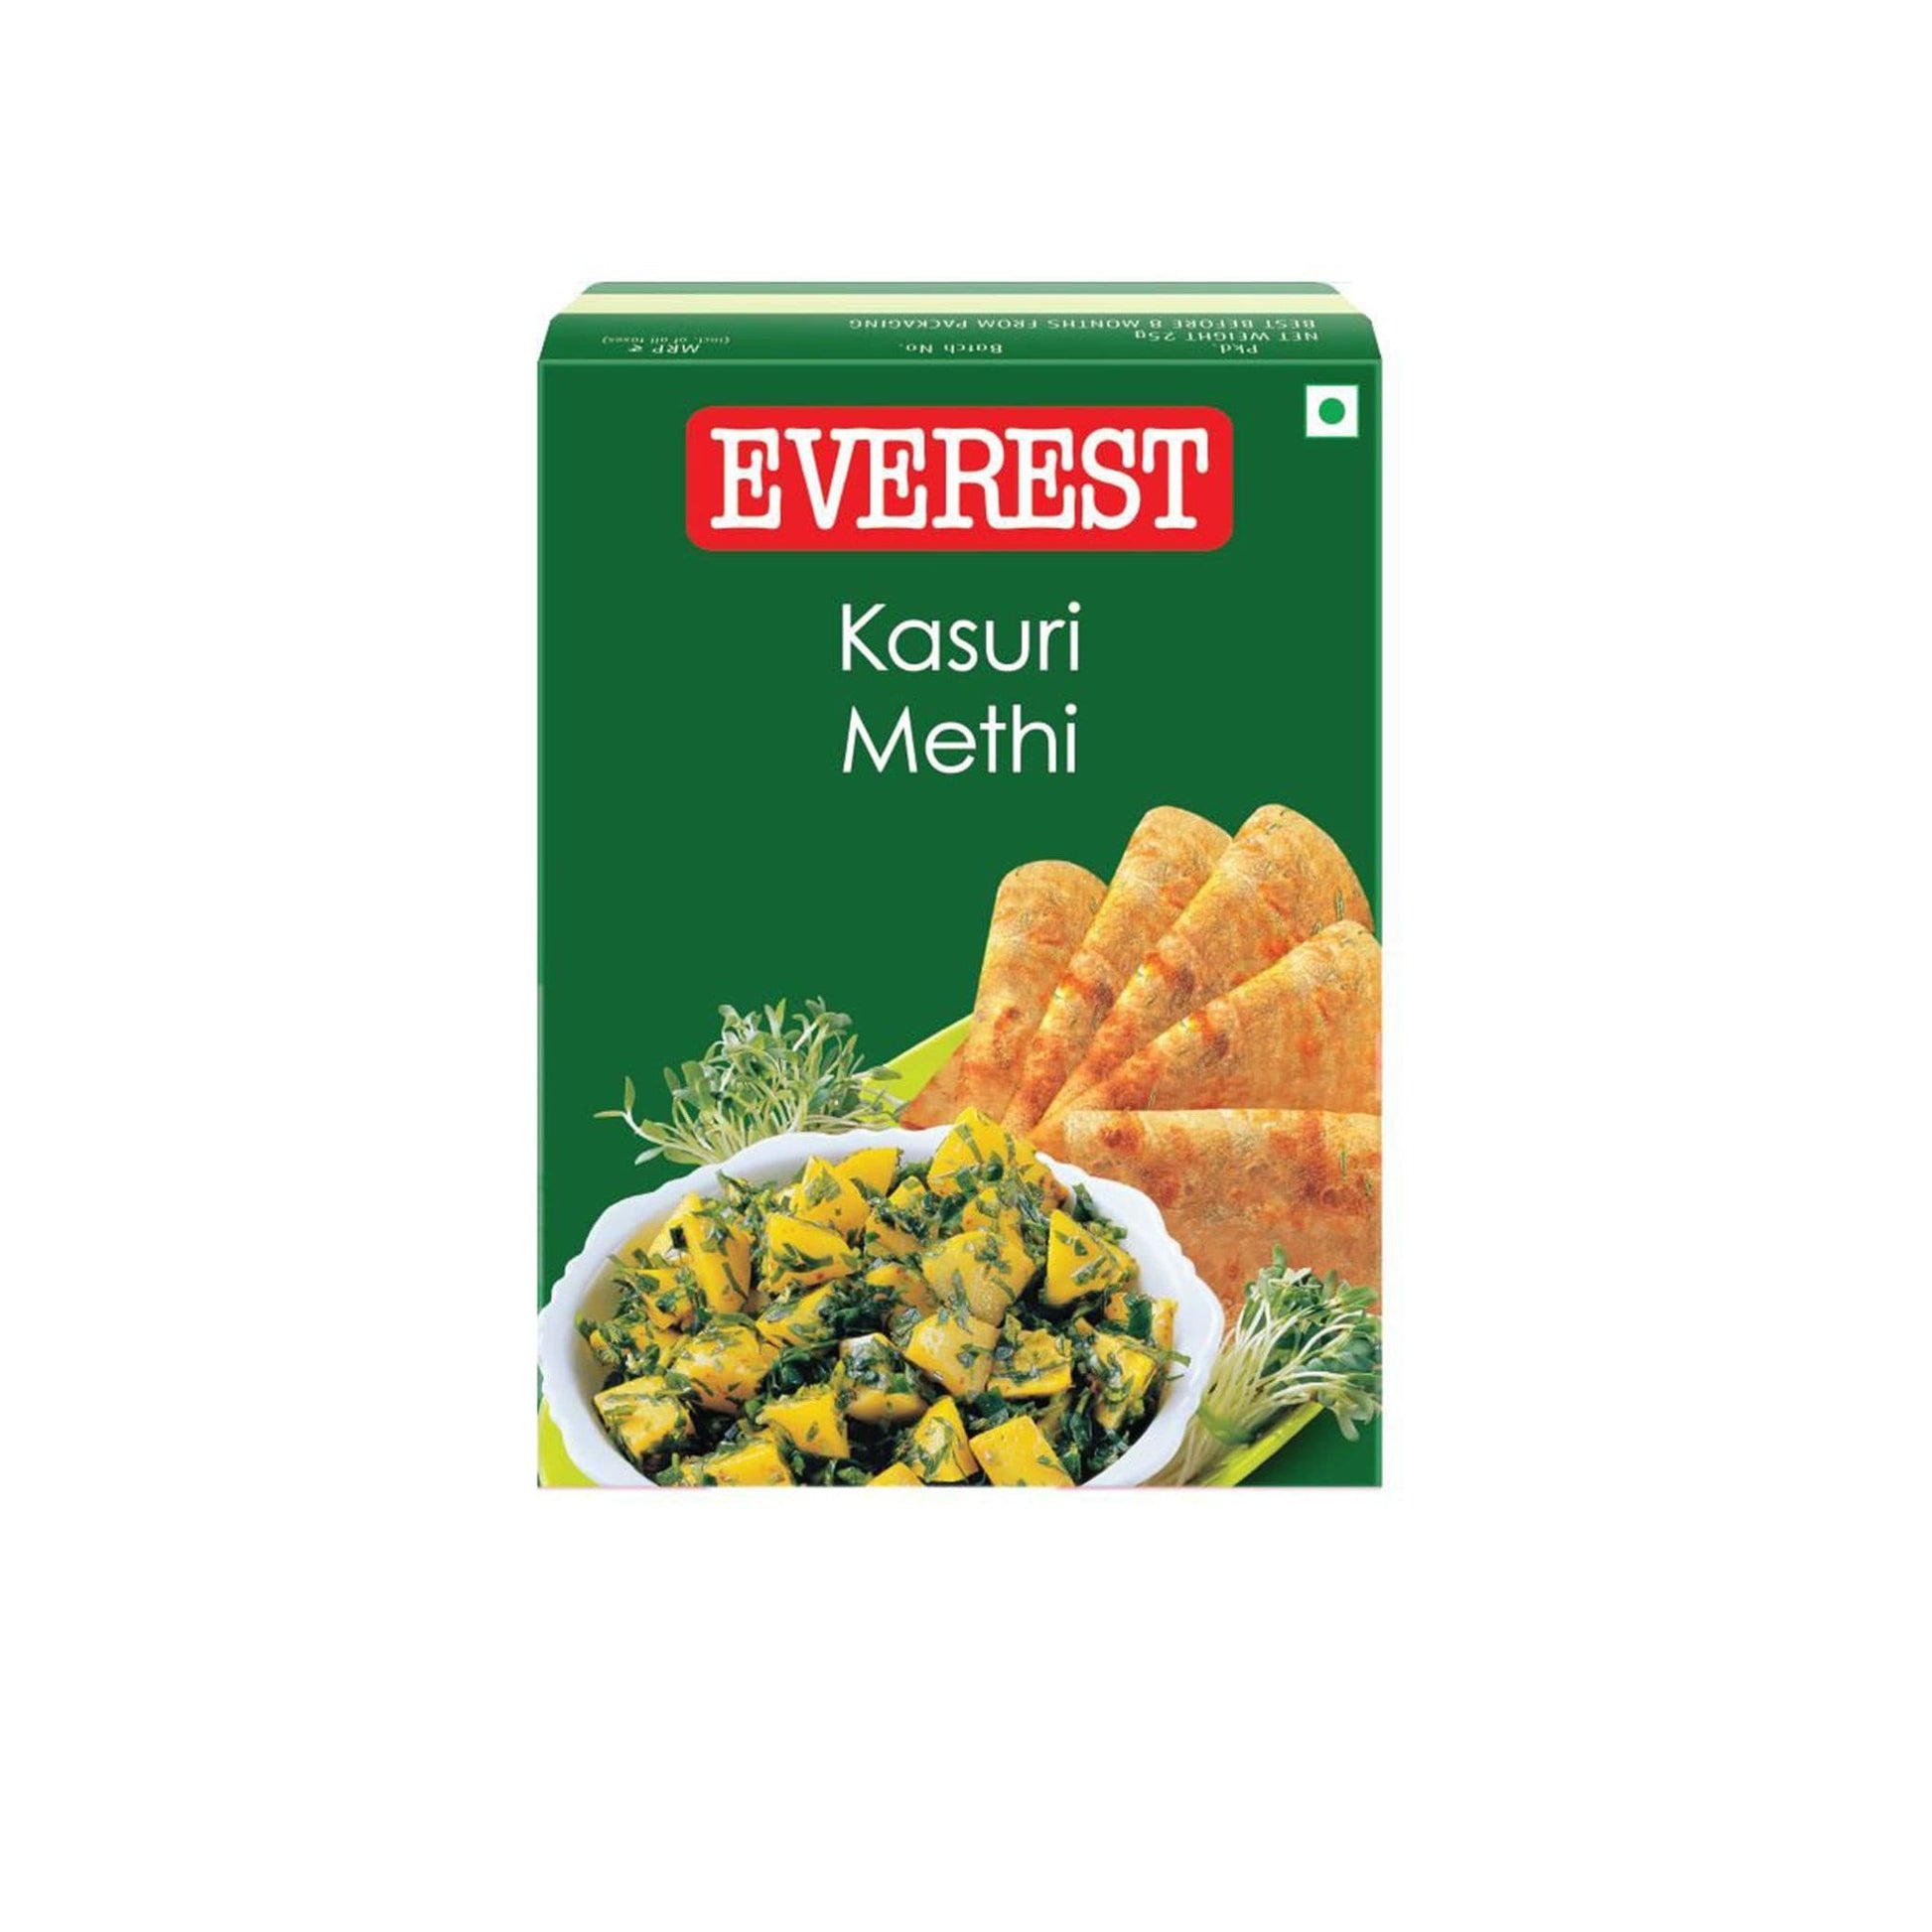 Everest Kasuri Methi (7047389446331)